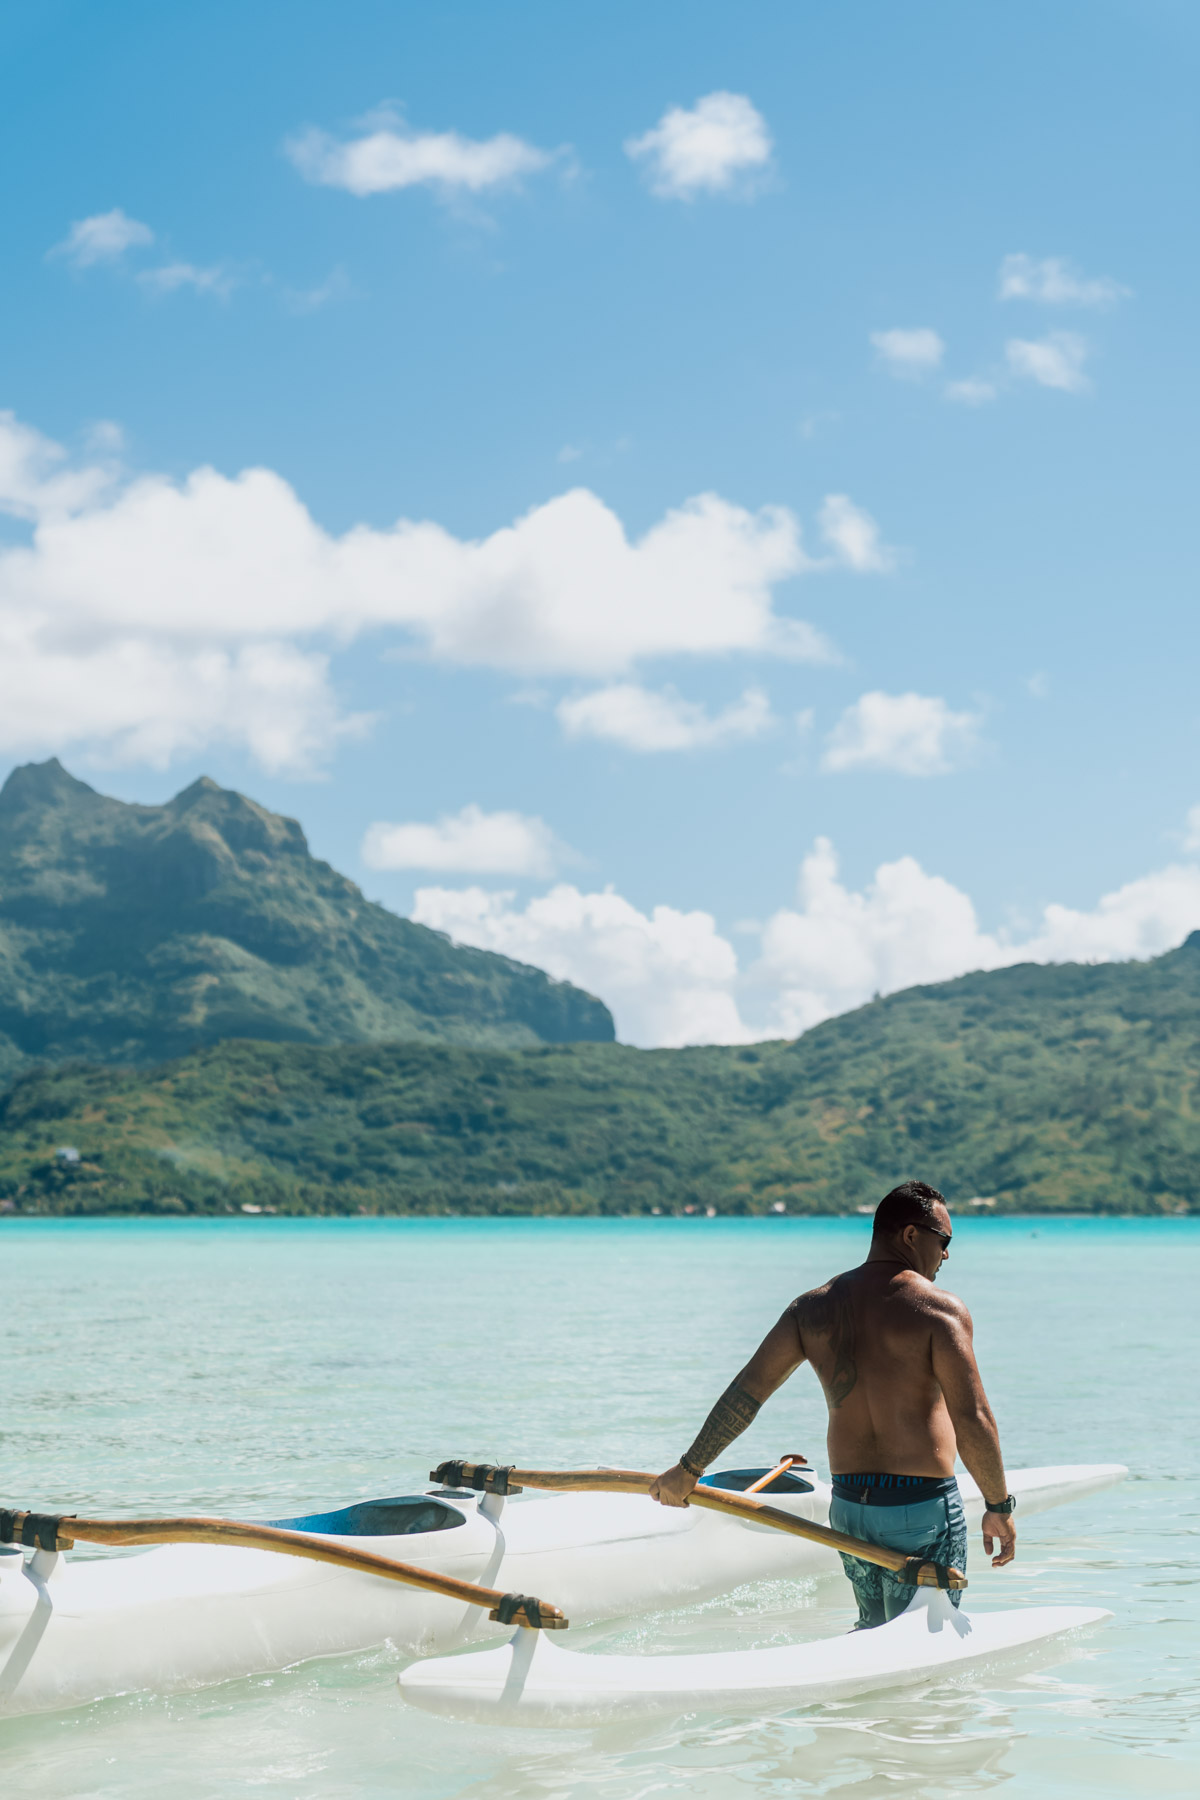 Polynesian man with a va'a trigger canoe in bora bora